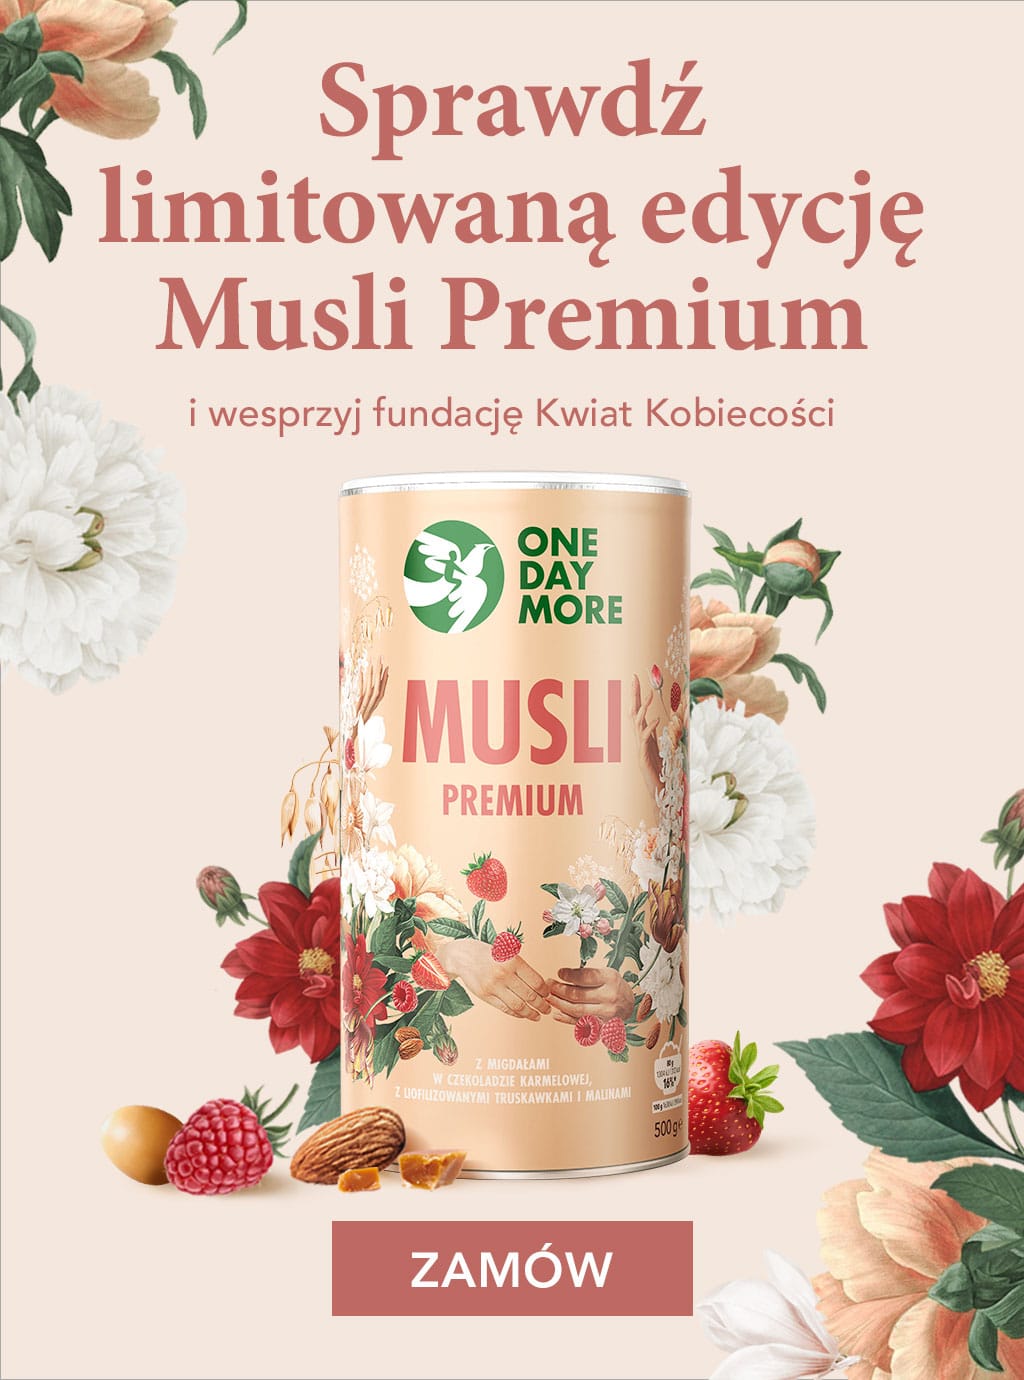 Musli Premium owocowe z migdałami w czekoladzie limitowana edycja OneDayMore